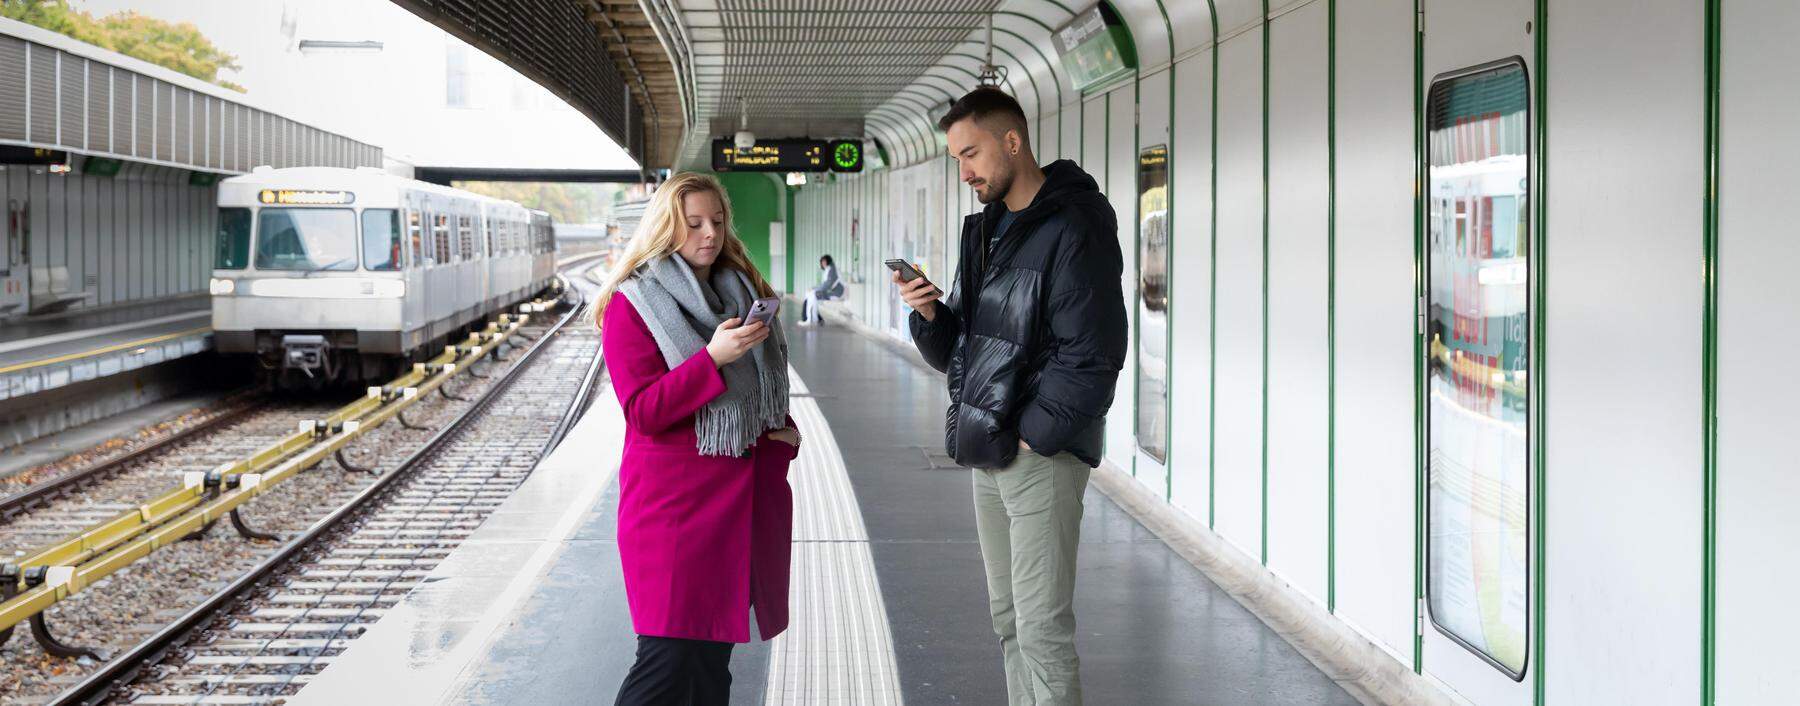 Daniela Schuh und Antonio Šošić sind Arbeitskollegen. Wie fühlen sie sich, mit jemandem unterwegs zu sein, der nur in sein Handy starrt?